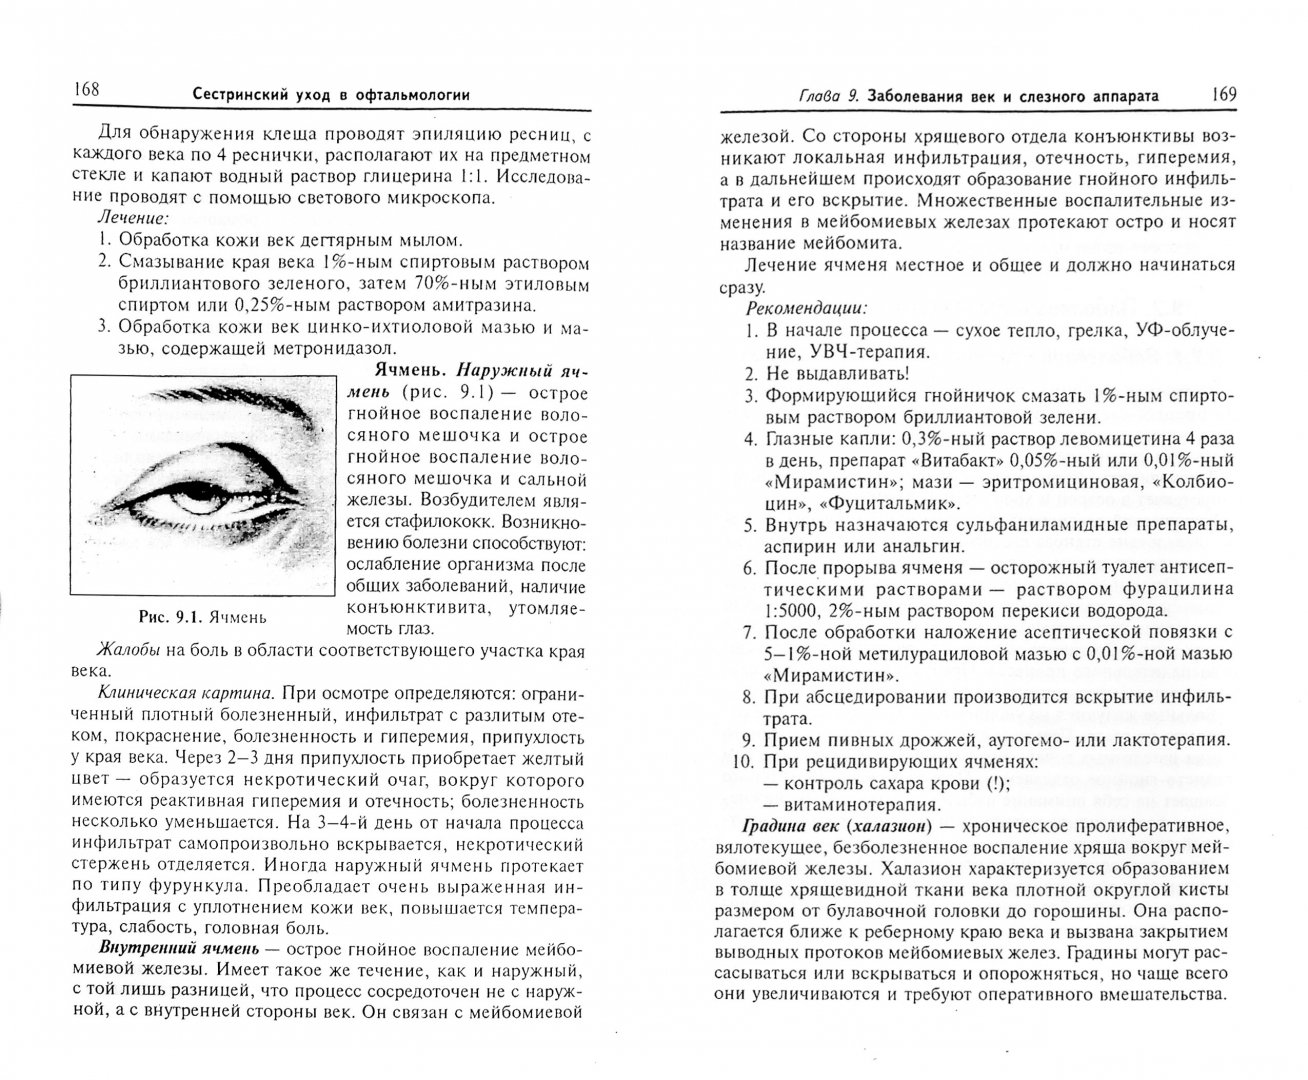 Иллюстрация 1 из 9 для Сестринский уход в офтальмологии. Учебное пособие - Рубан, Гайнутдинов | Лабиринт - книги. Источник: Лабиринт